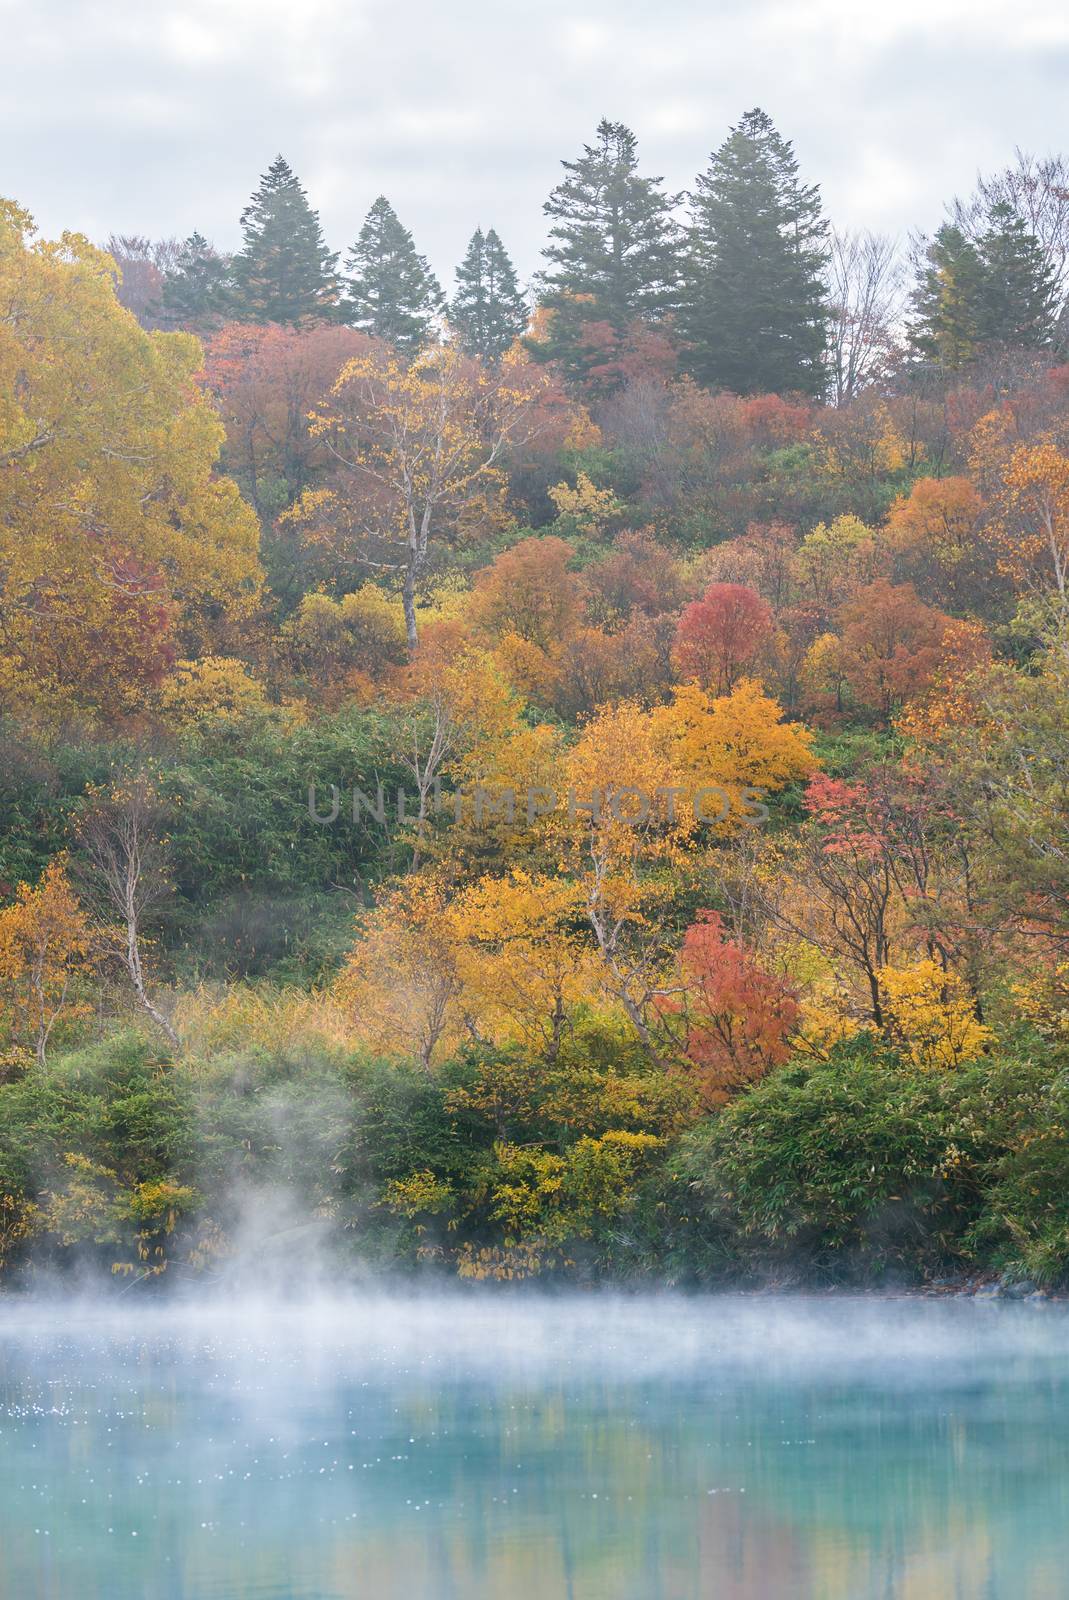 Autumn Onsen Lake Aomori Japan by vichie81